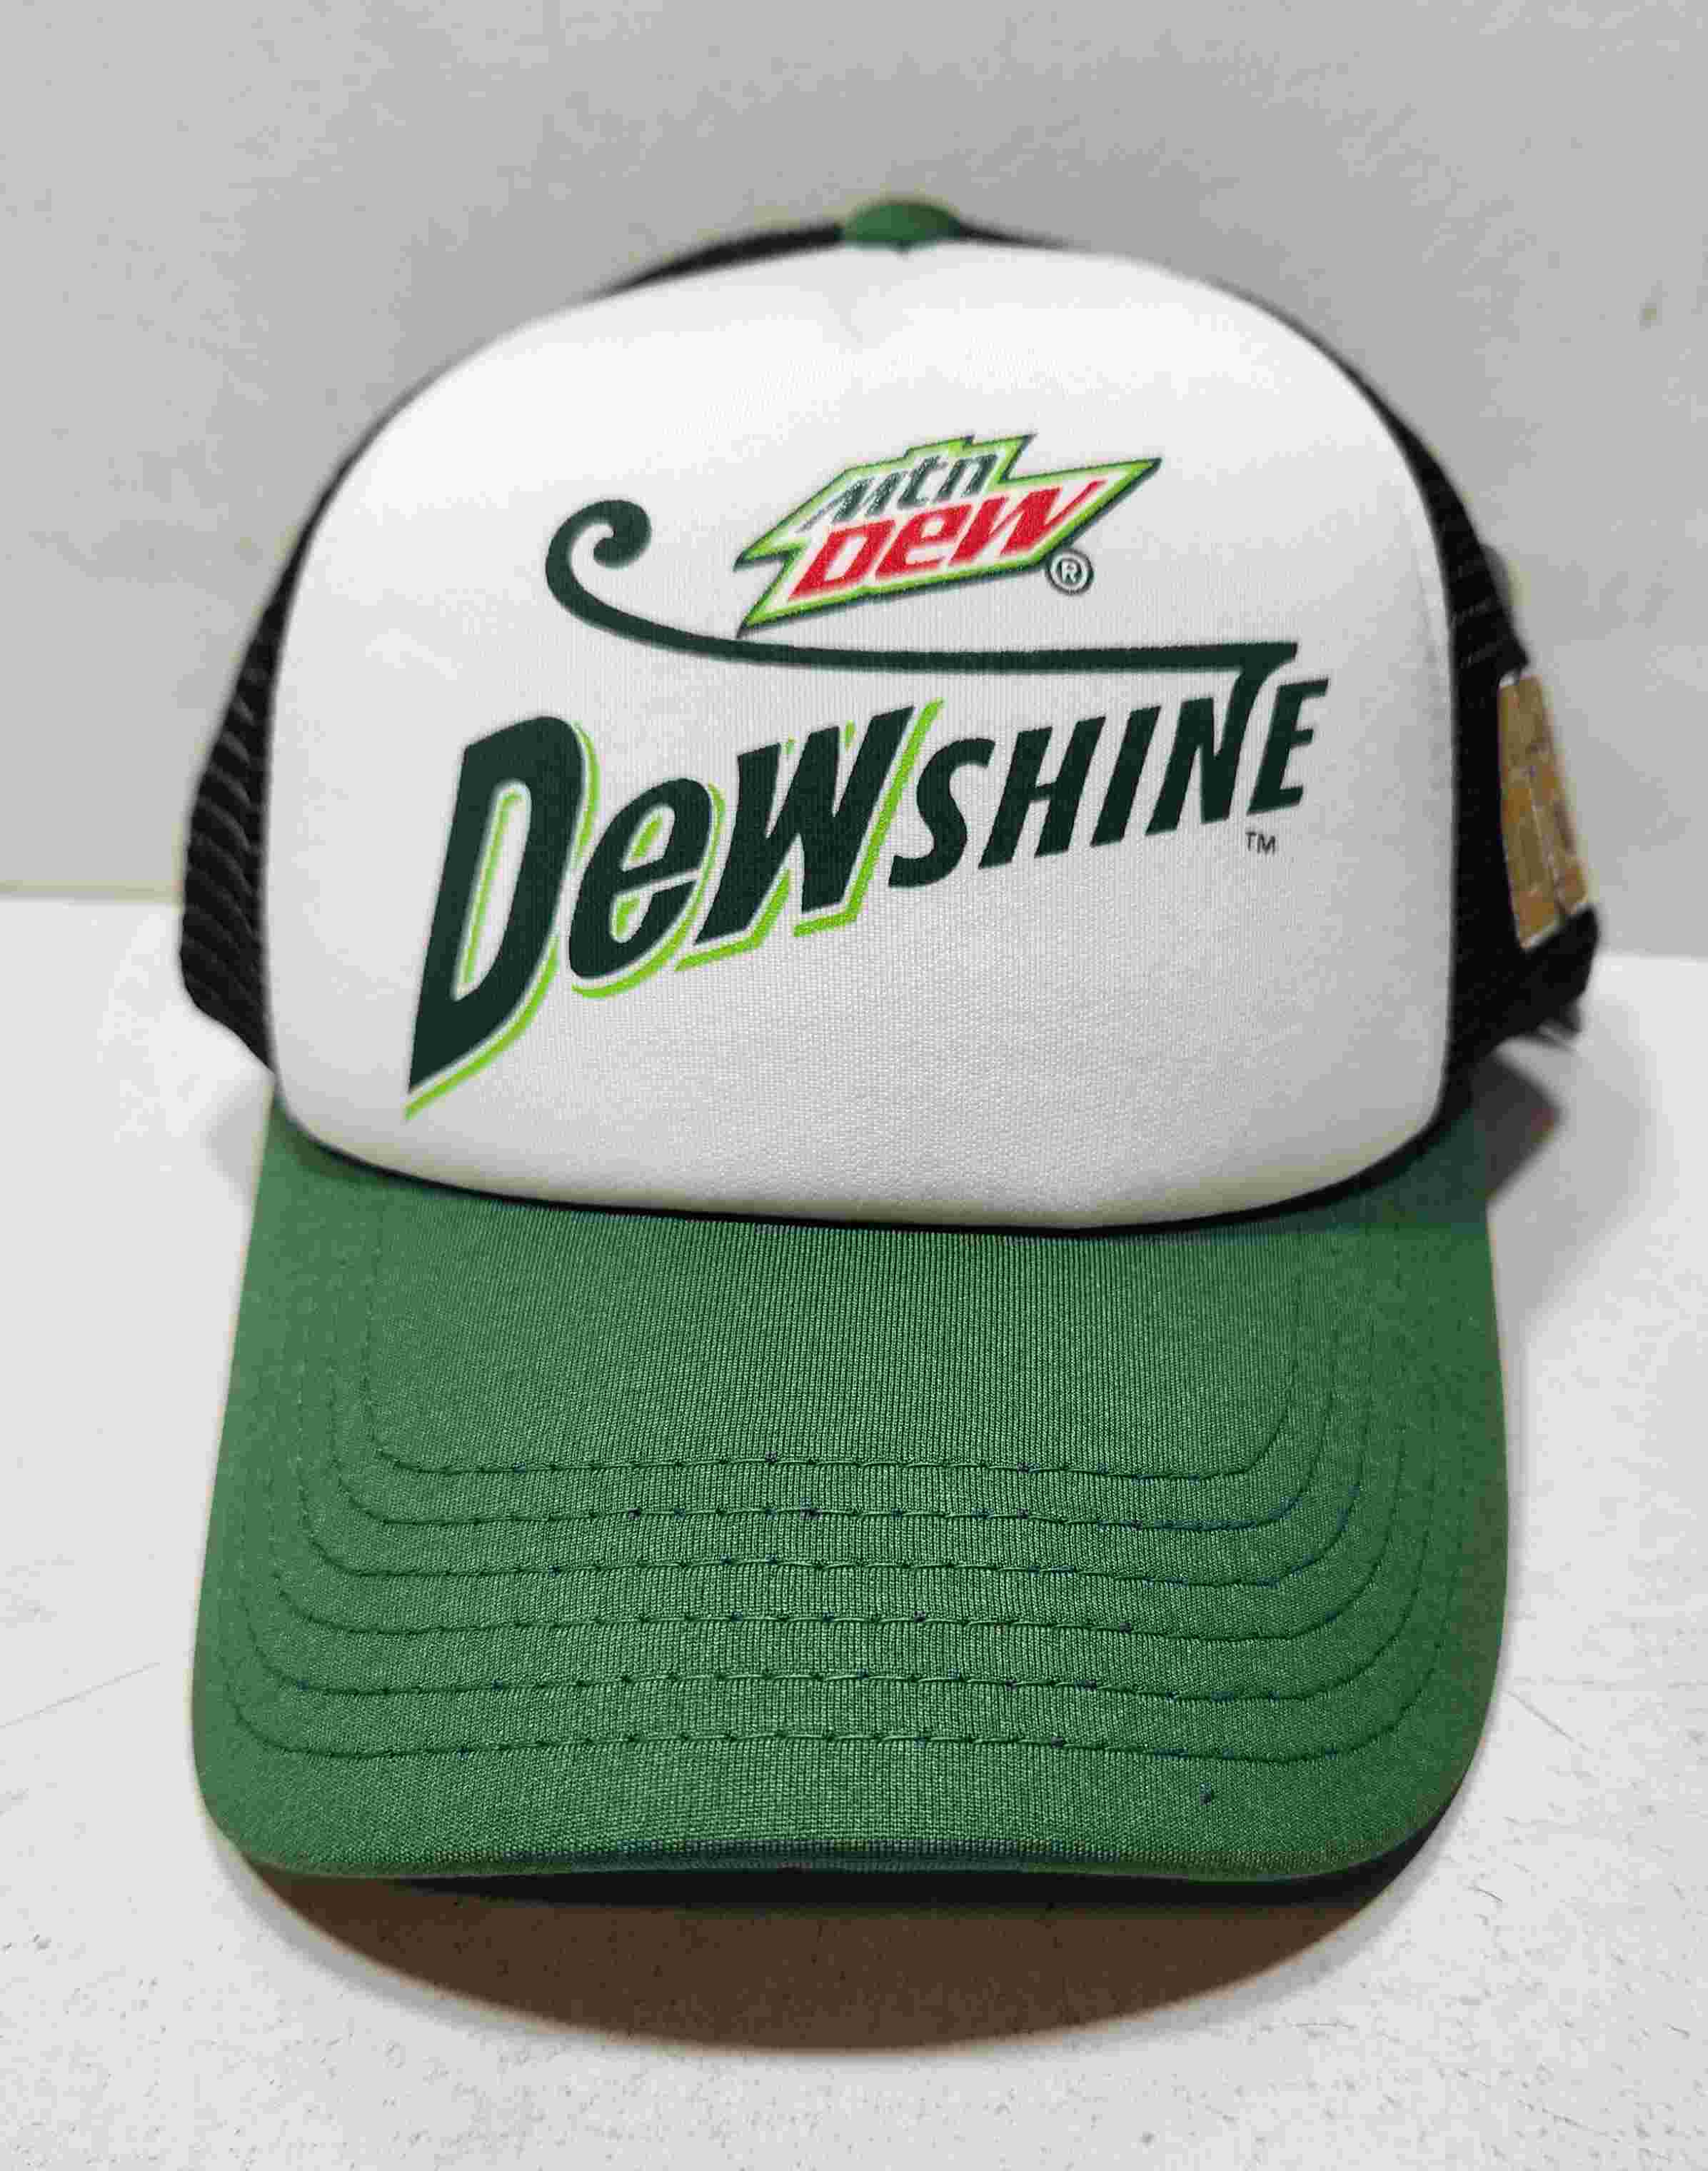 2015 Dale Earnhardt Jr Mountain Dew "DewShine" Trucker mesh cap